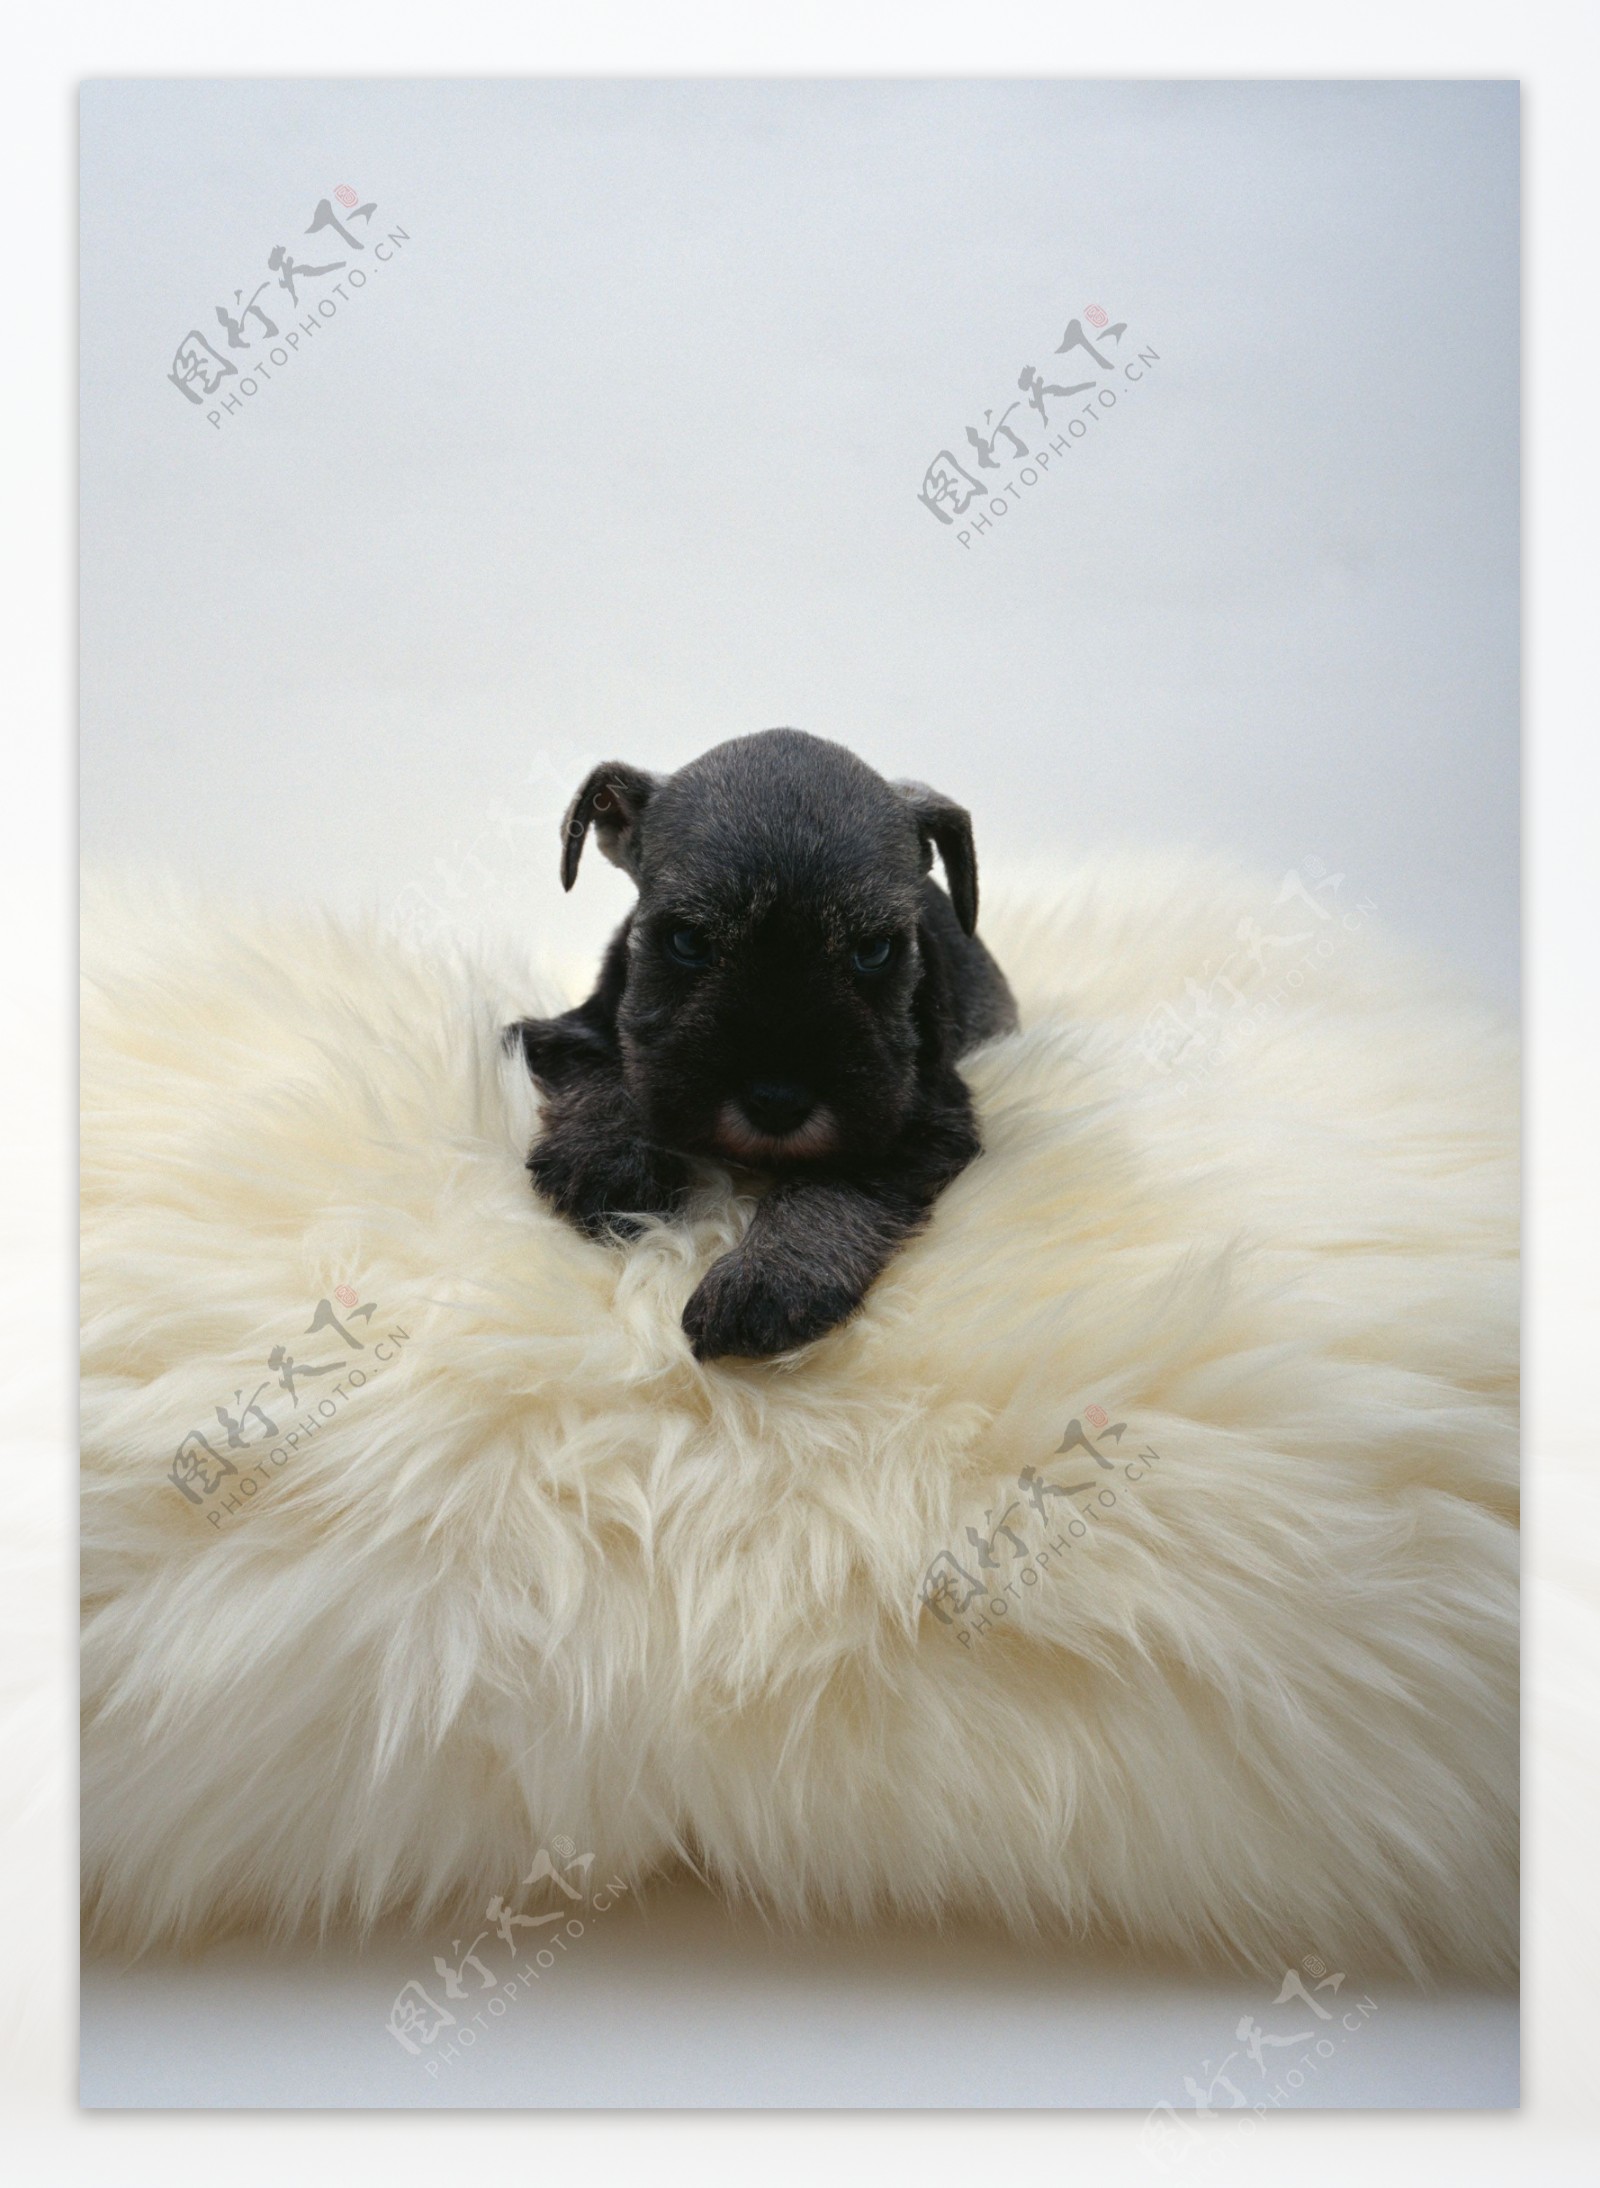 趴在长毛毯上的黑色狗狗图片